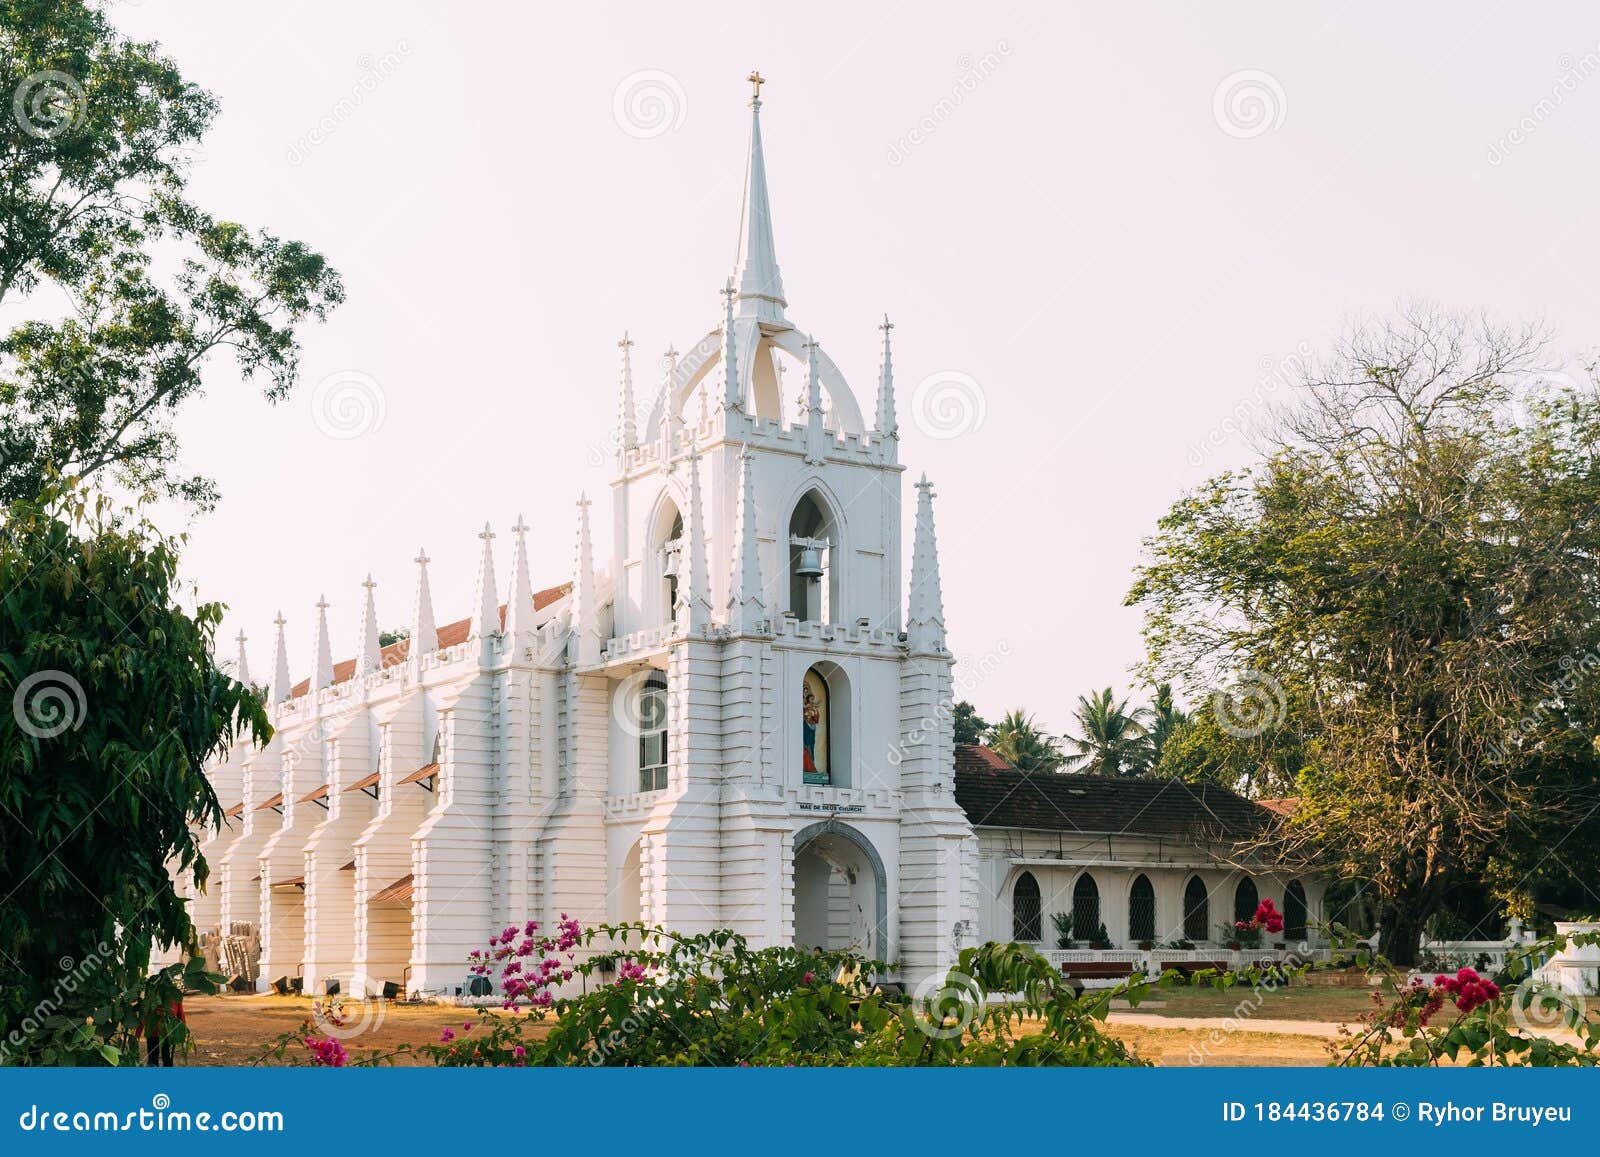 saligao, goa, india. mae de deus church. local landmark